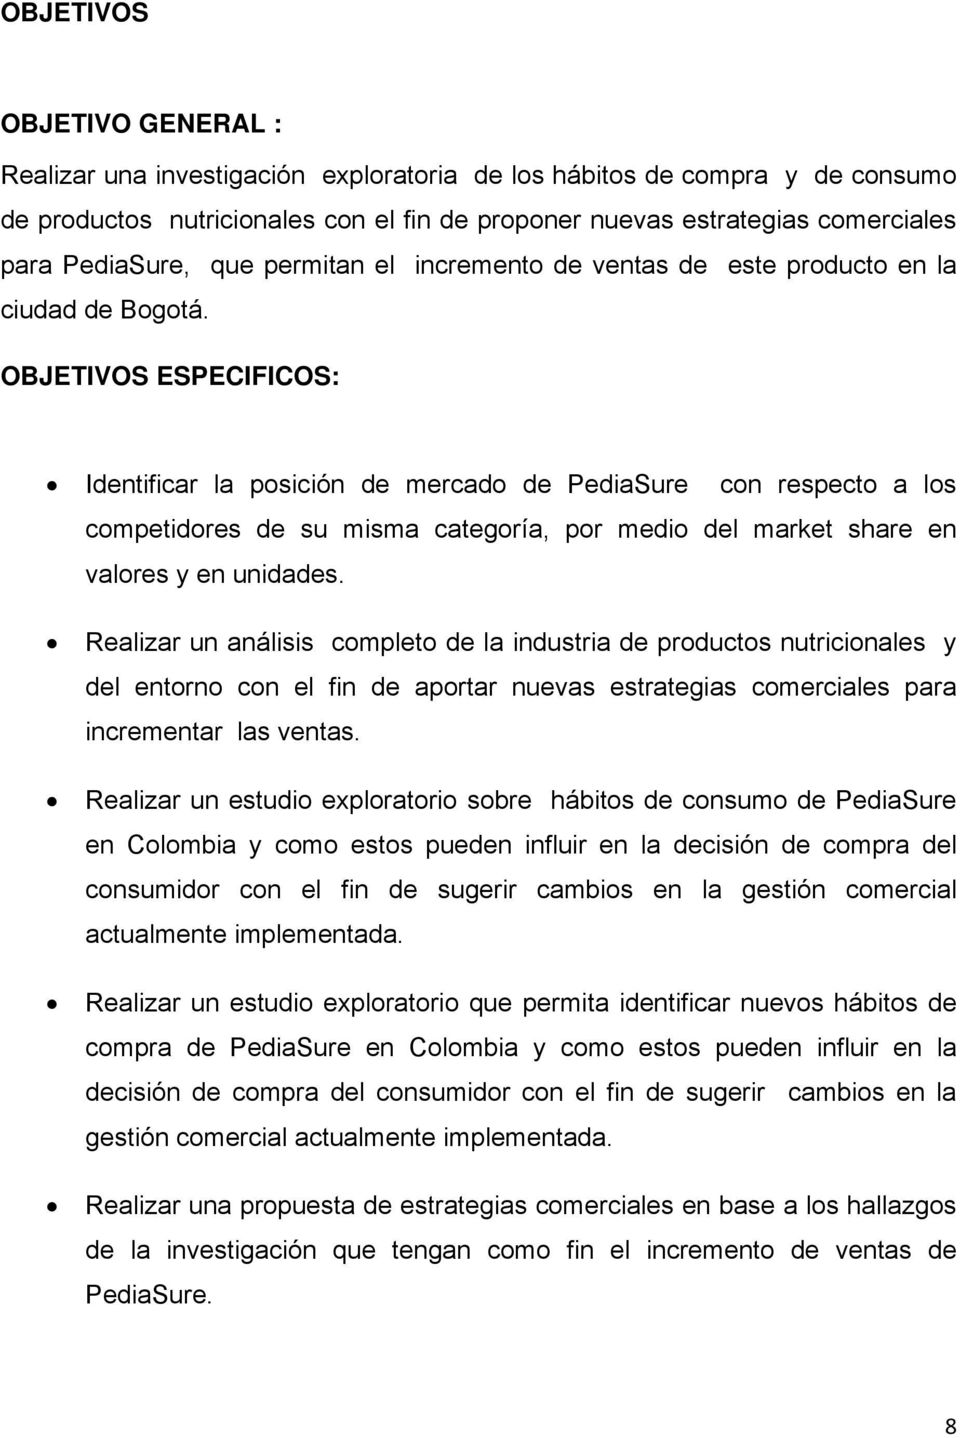 OBJETIVOS ESPECIFICOS: Identificar la posición de mercado de PediaSure con respecto a los competidores de su misma categoría, por medio del market share en valores y en unidades.